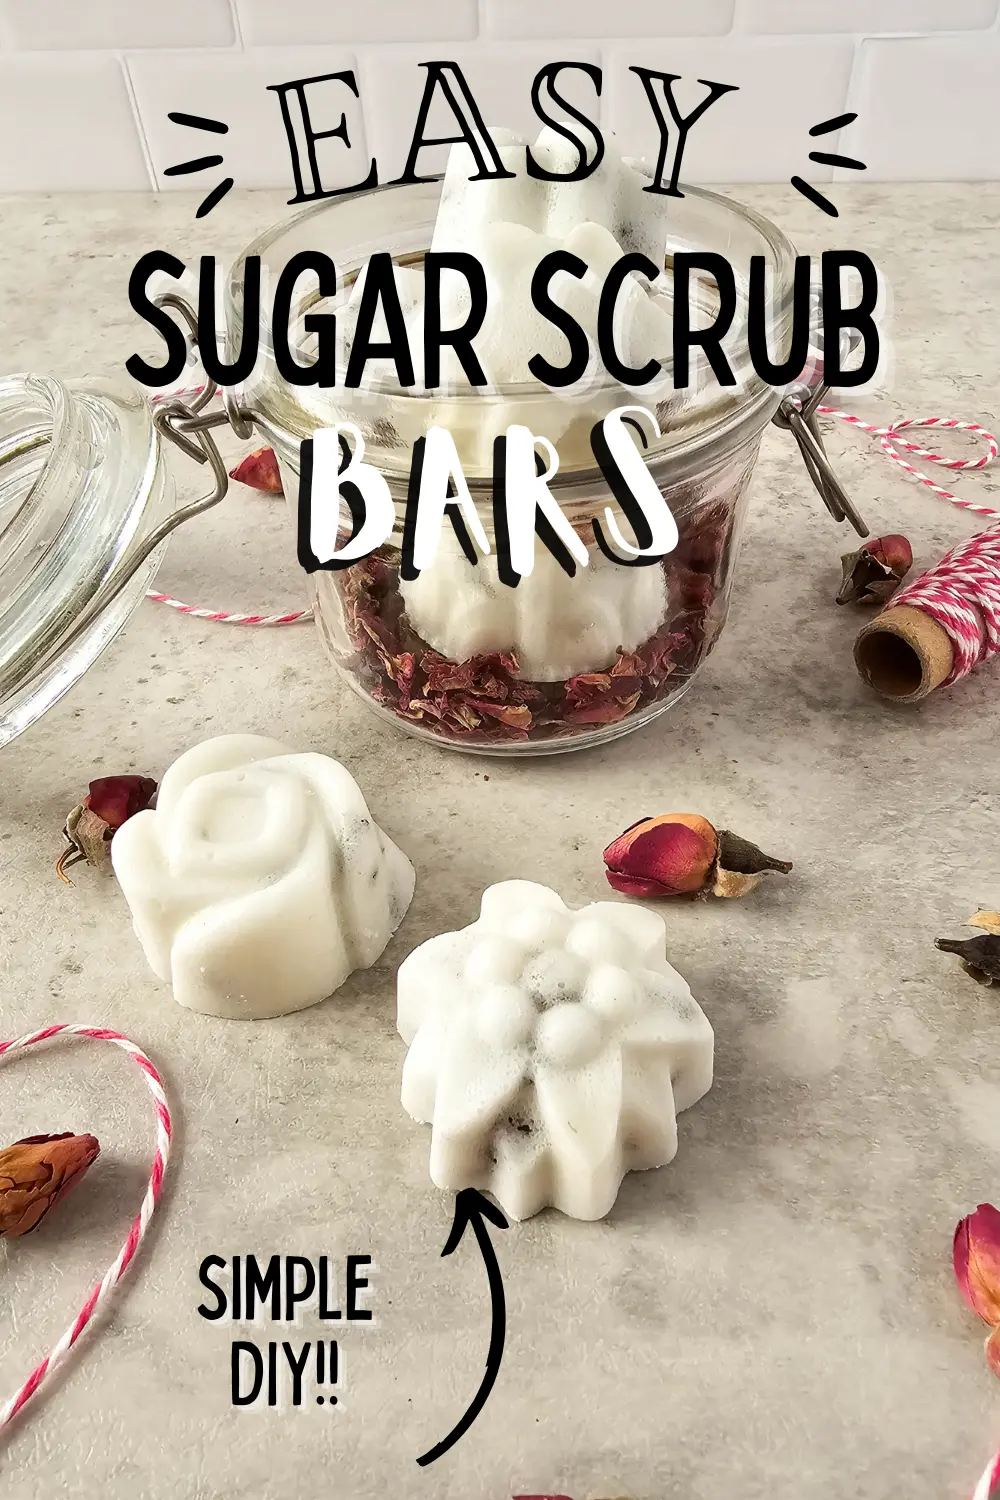 image of homemade diy rose sugar scrub bars and text